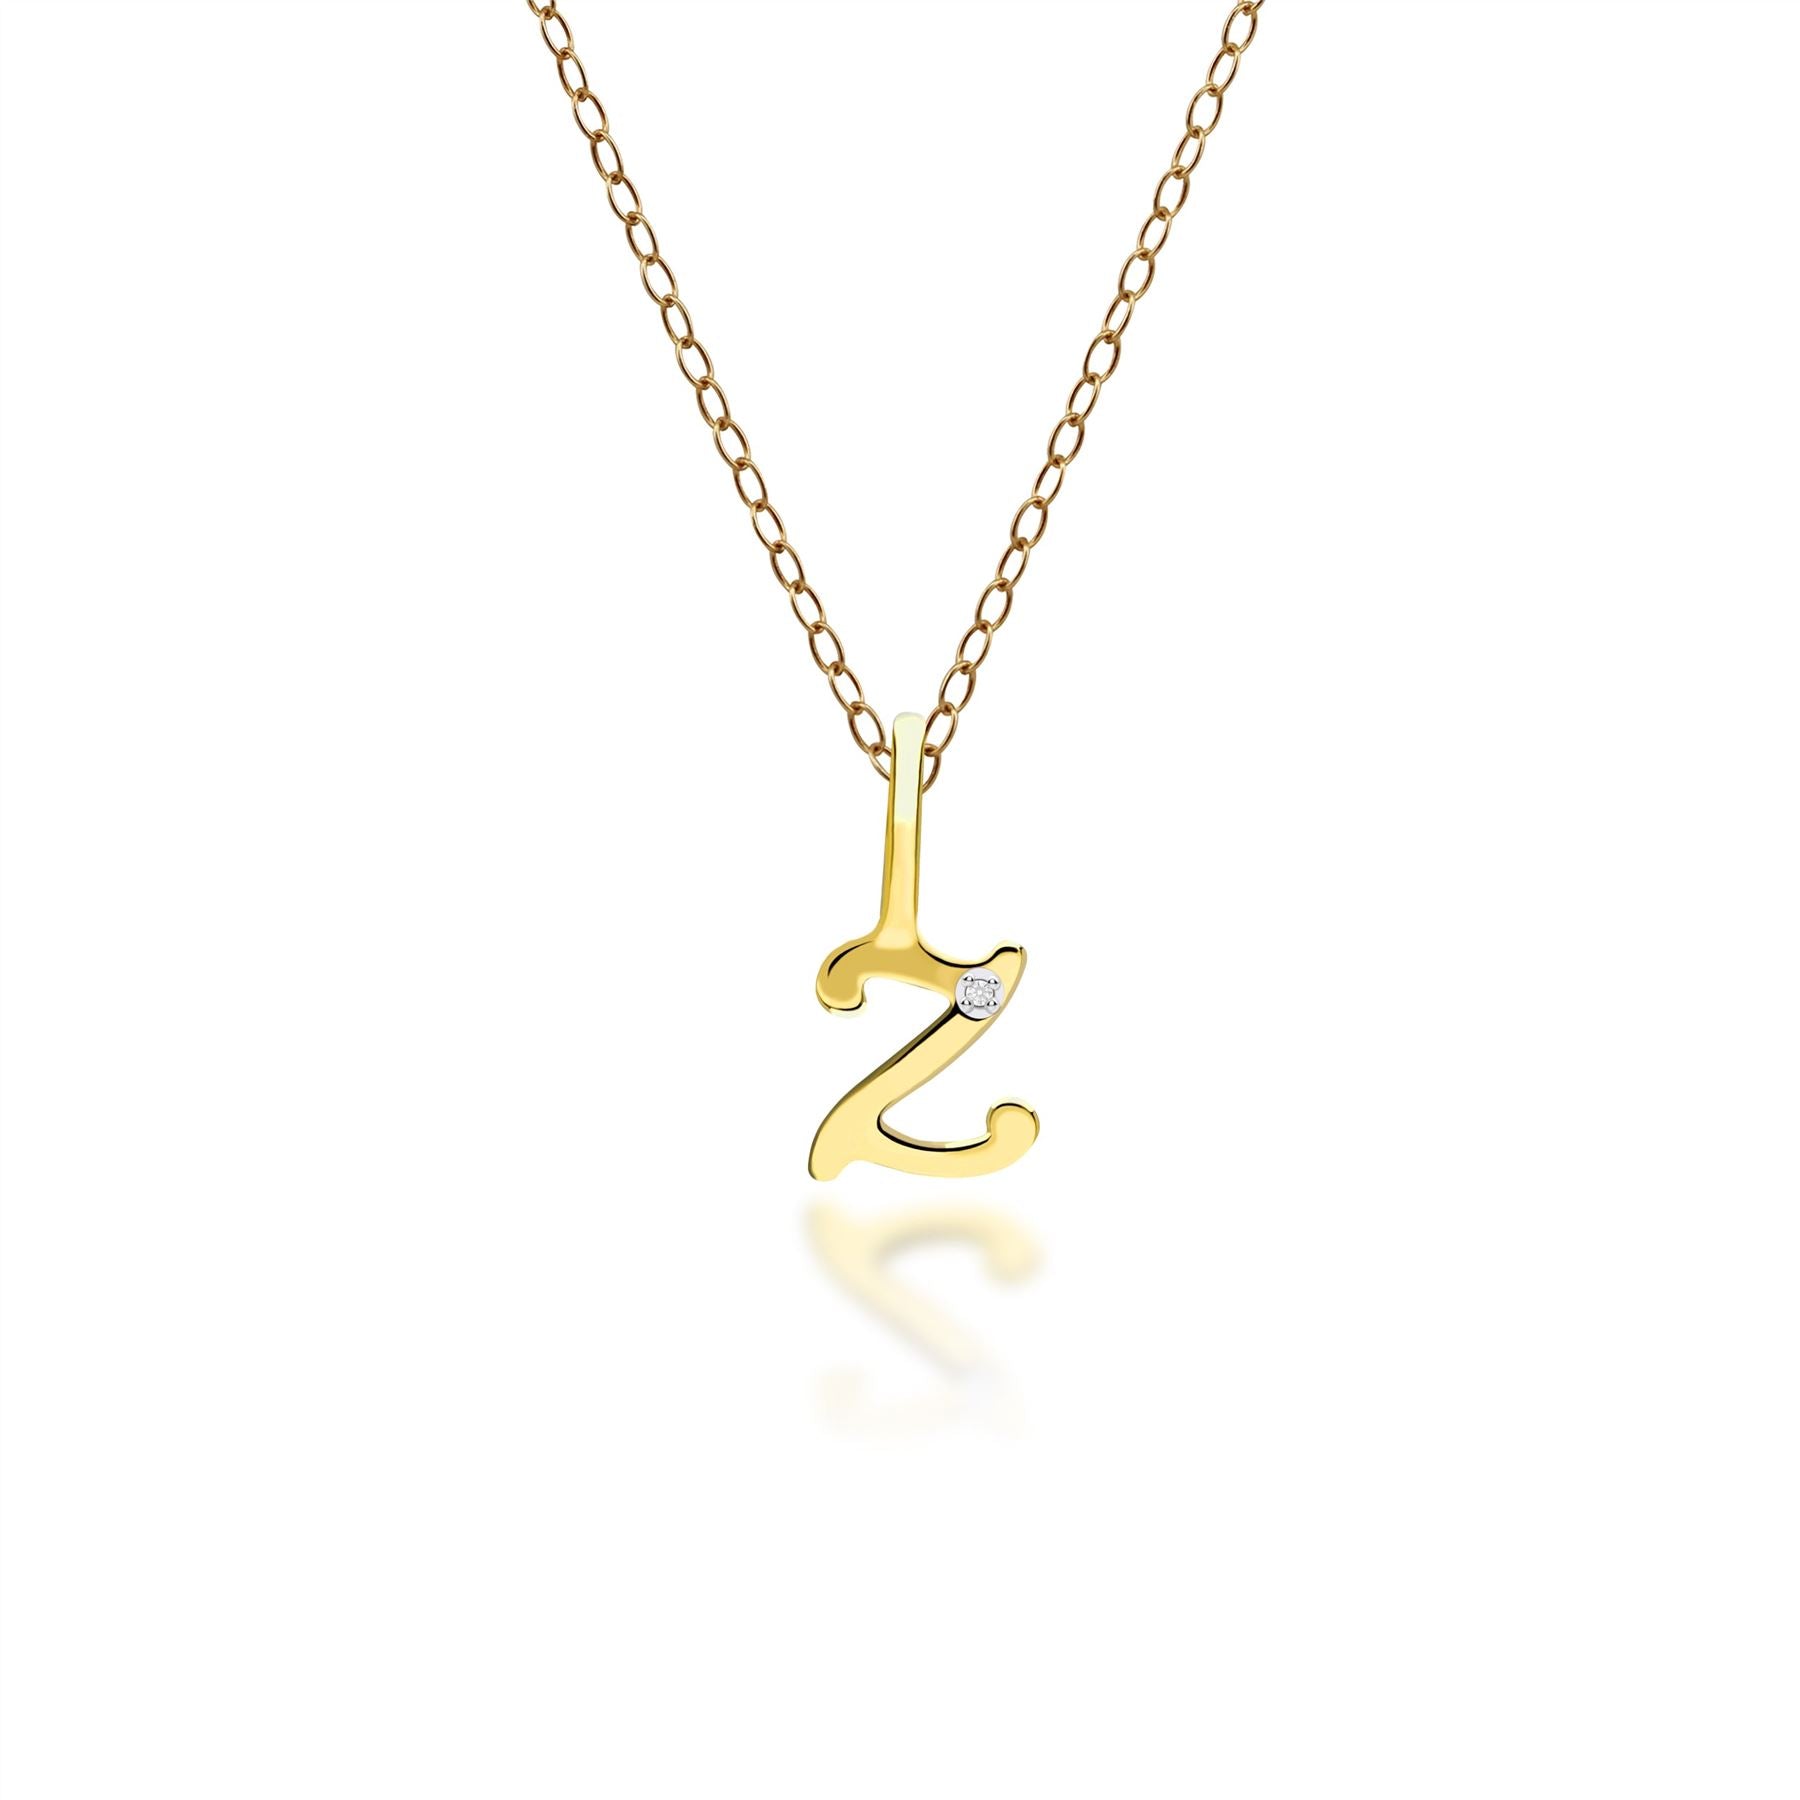 Ciondolo collana diamanti con lettera Z dell'alfabeto in oro giallo da 9 ct